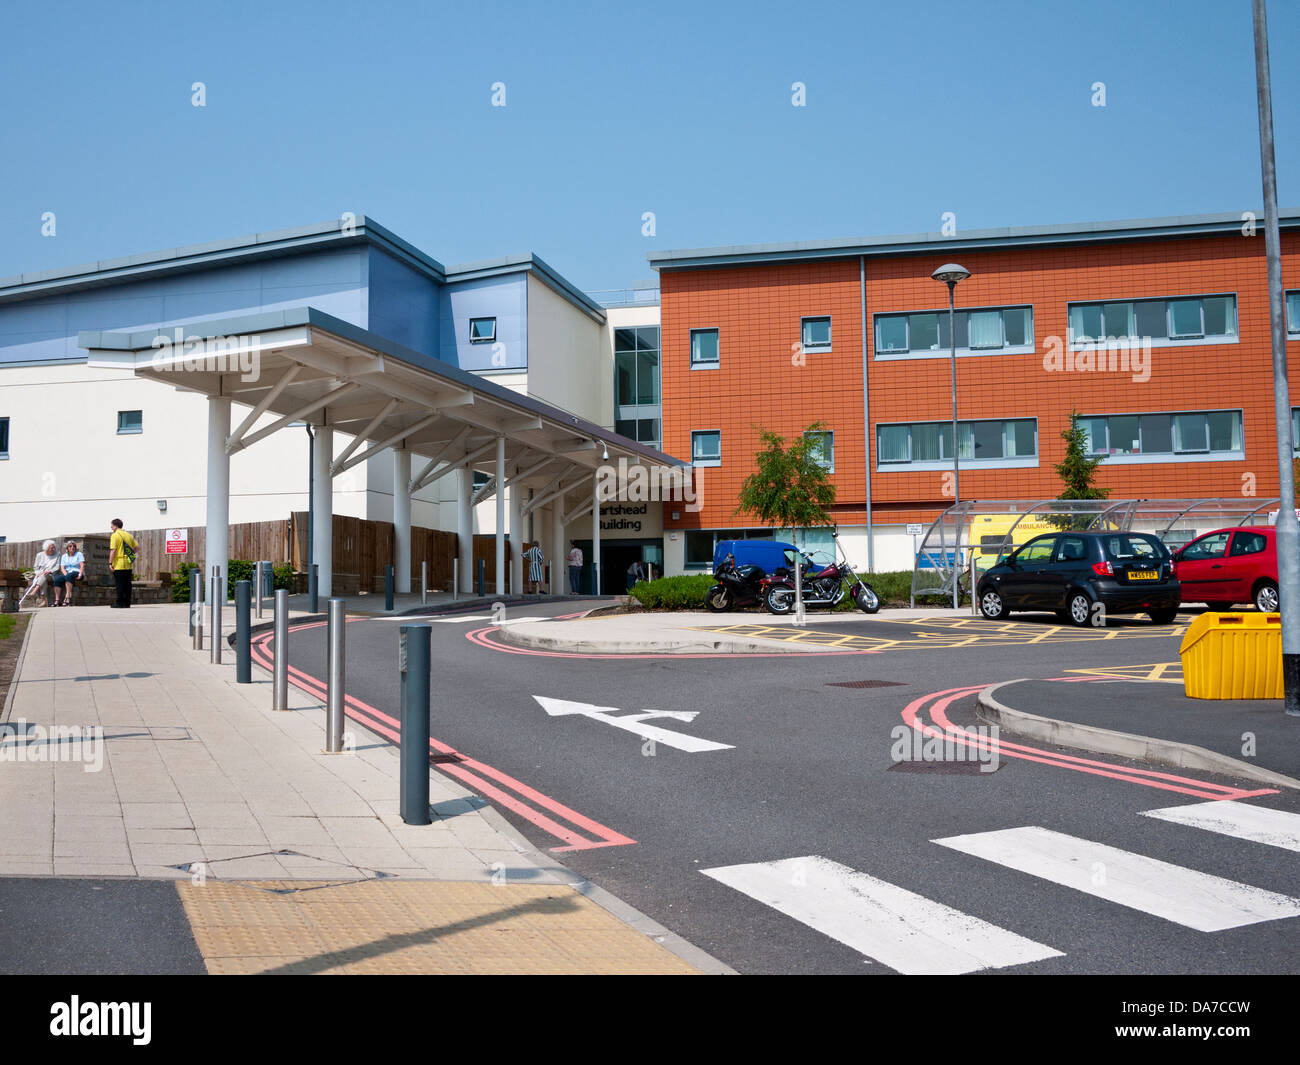 Tameside General Hospital, Ashton-under-Lyne,Greater Manchester, UK. Banque D'Images